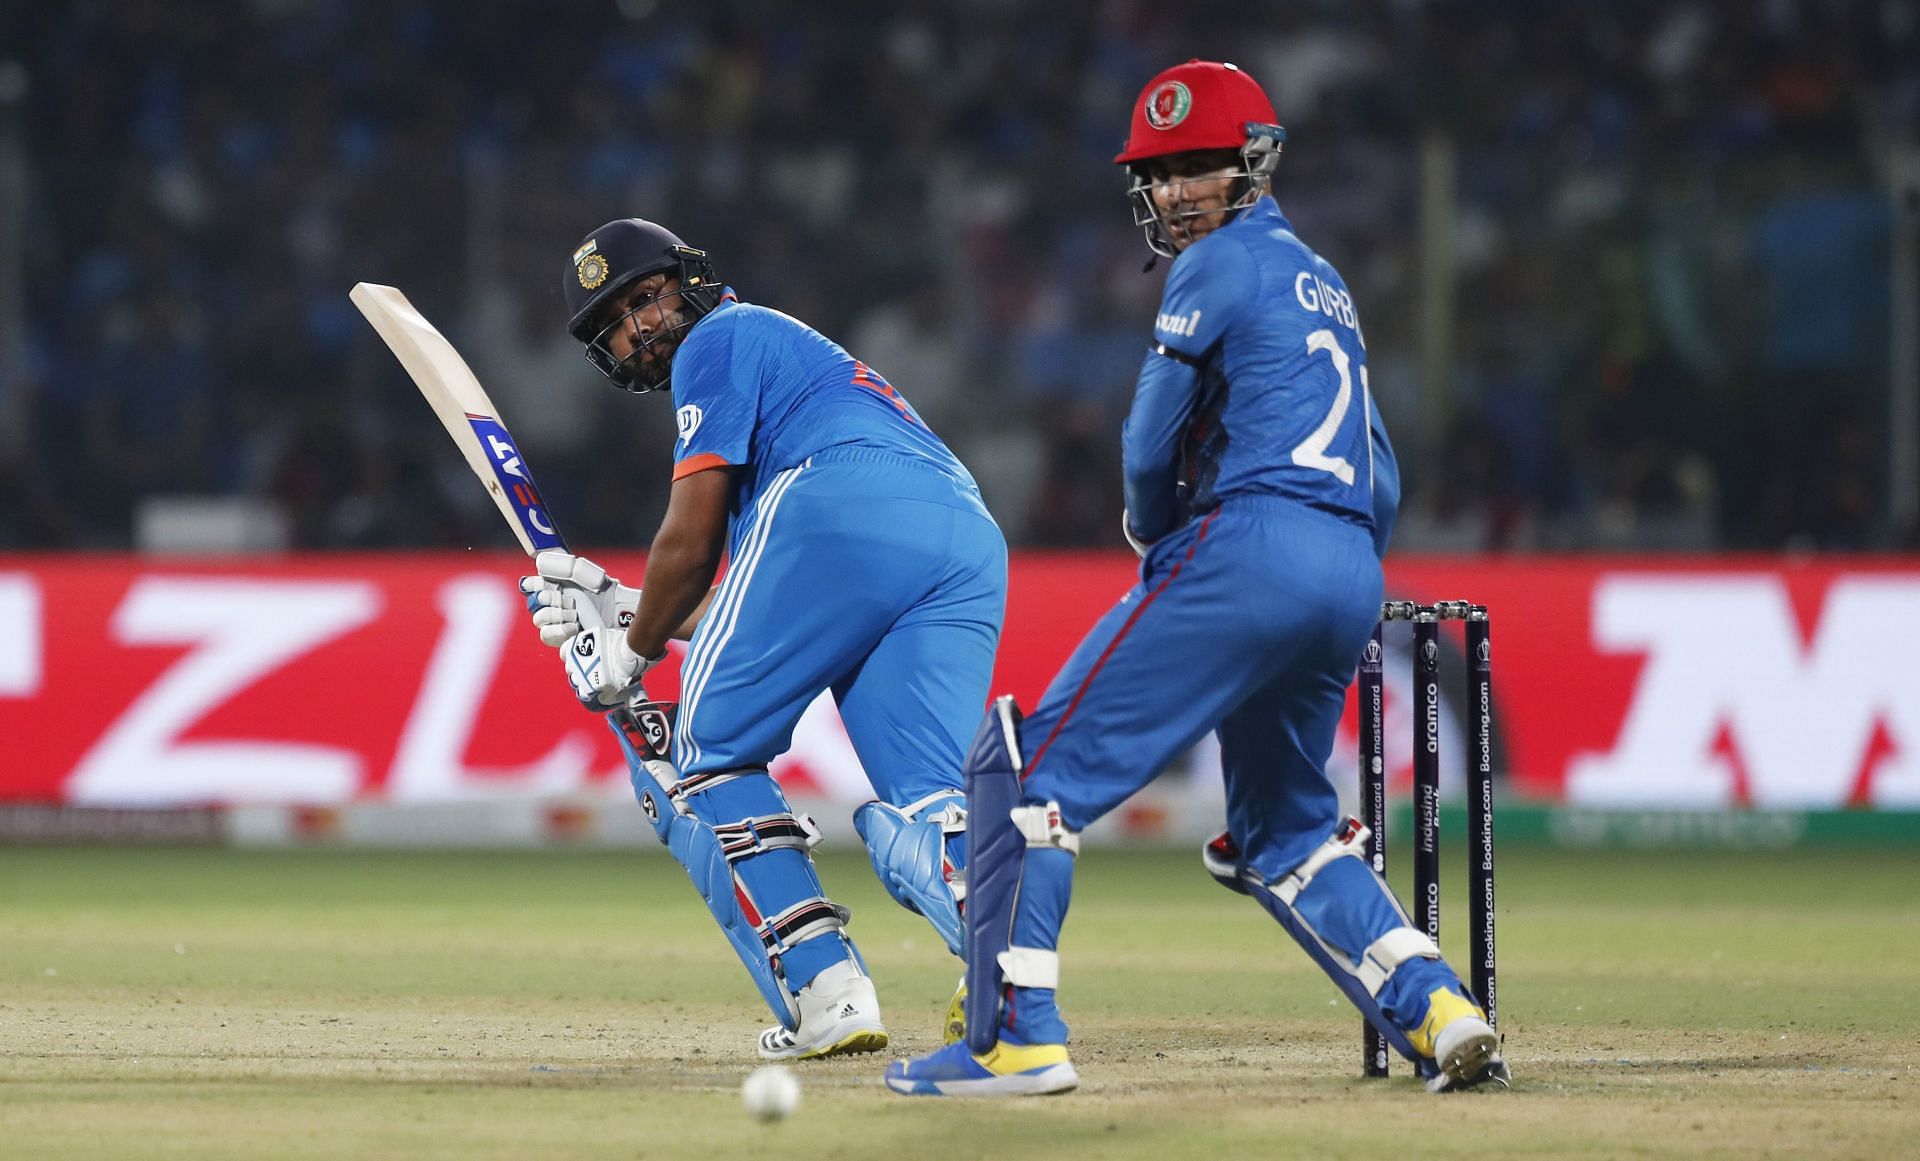 India v Afghanistan - ICC Men